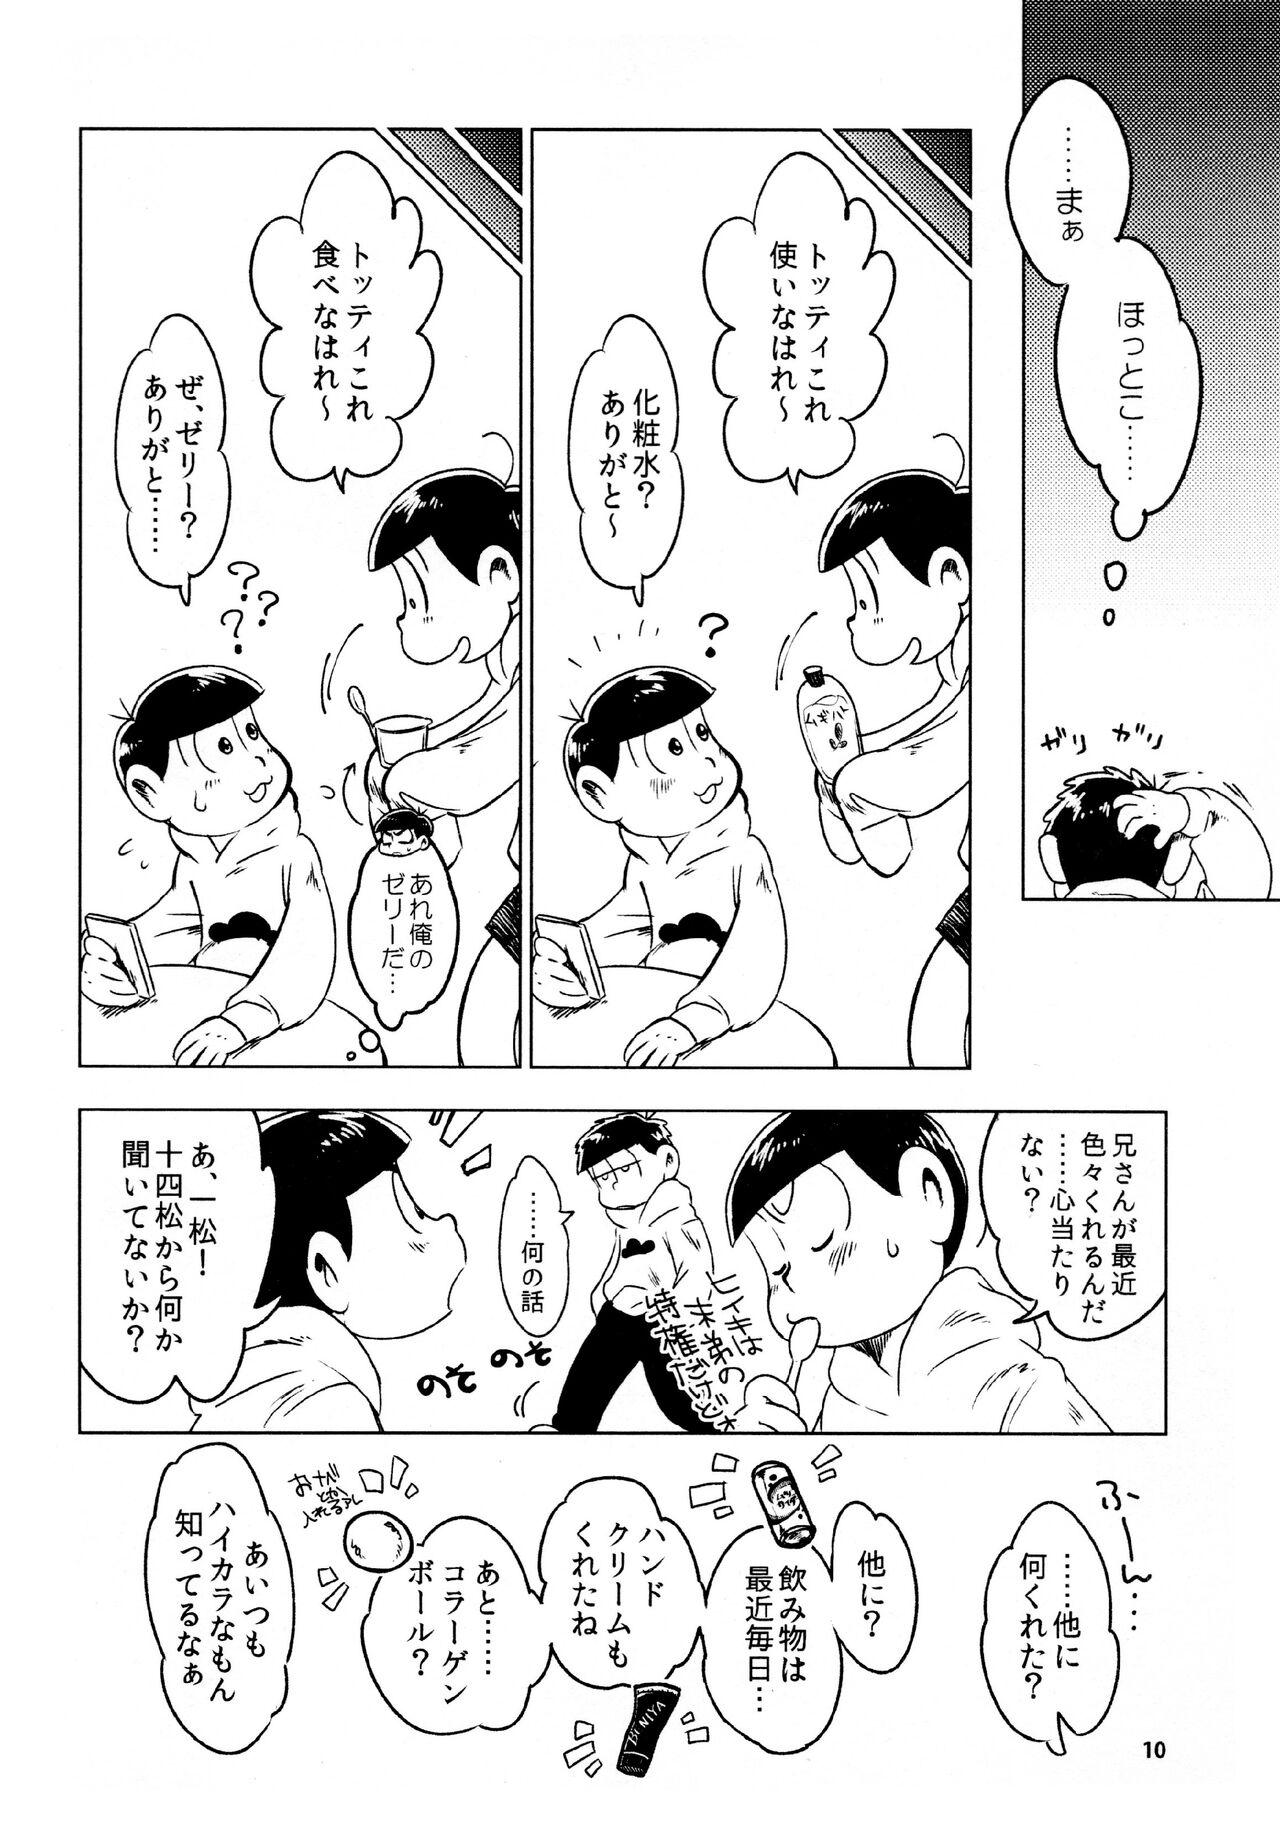 Piercing todomatsu bishi yonurekeikaku - Osomatsu-san Cojiendo - Page 10